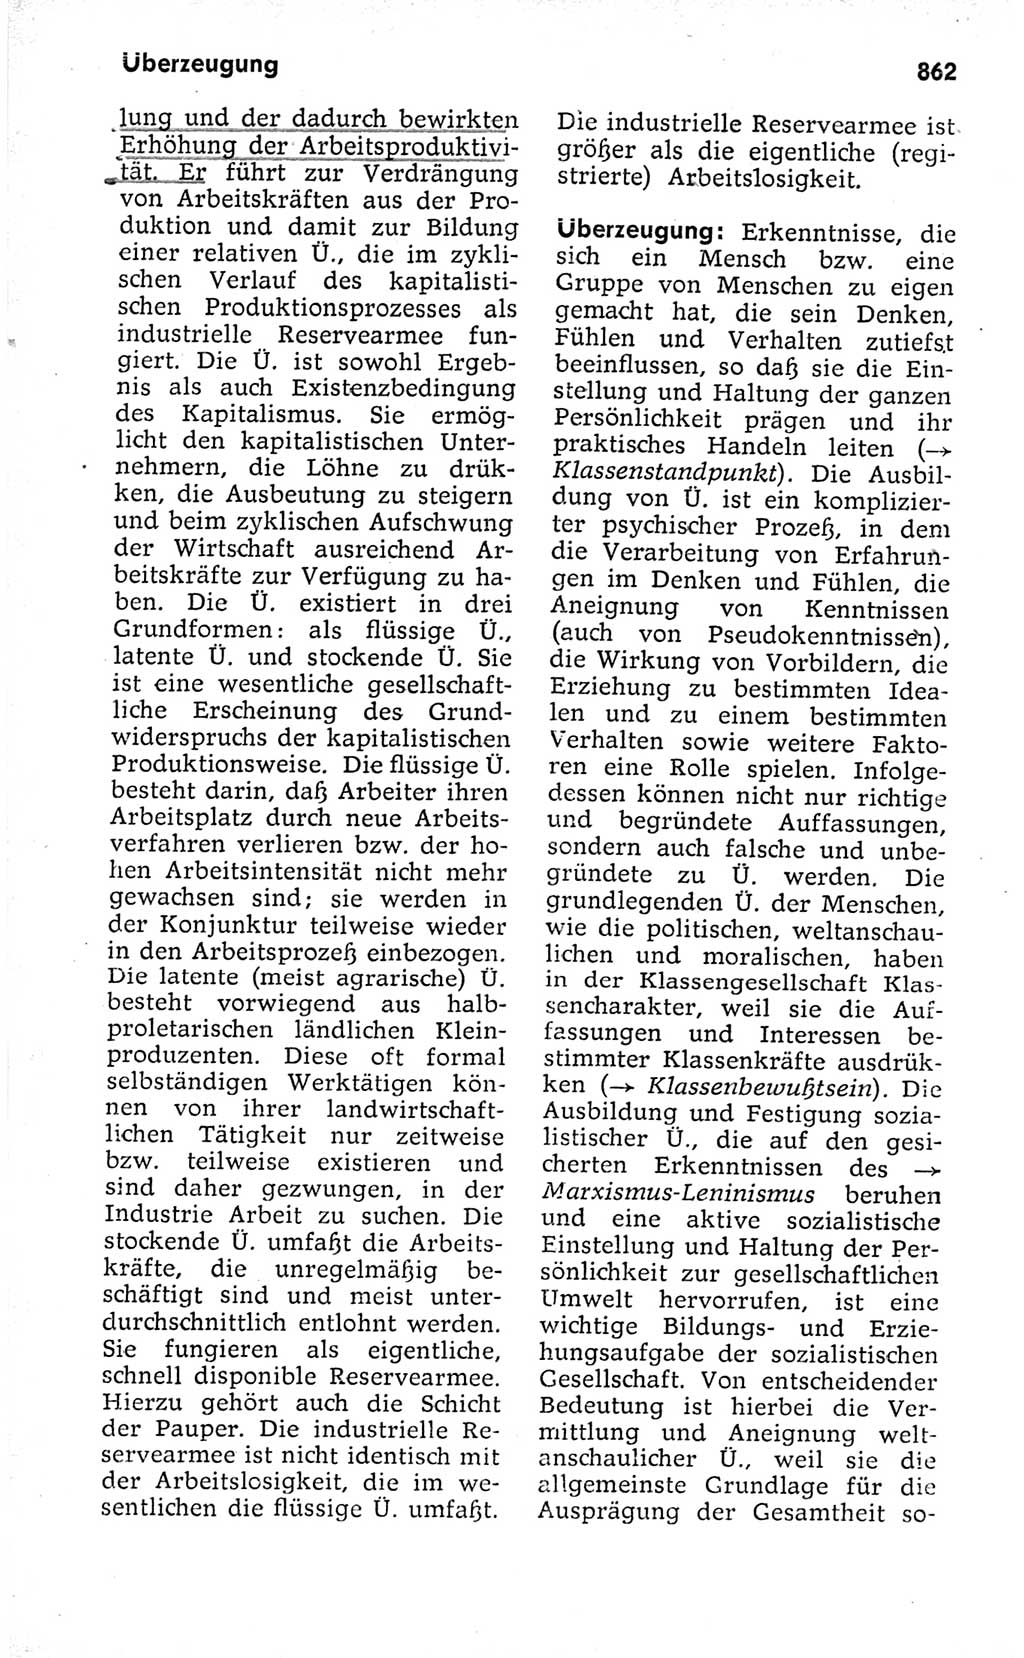 Kleines politisches Wörterbuch [Deutsche Demokratische Republik (DDR)] 1973, Seite 862 (Kl. pol. Wb. DDR 1973, S. 862)